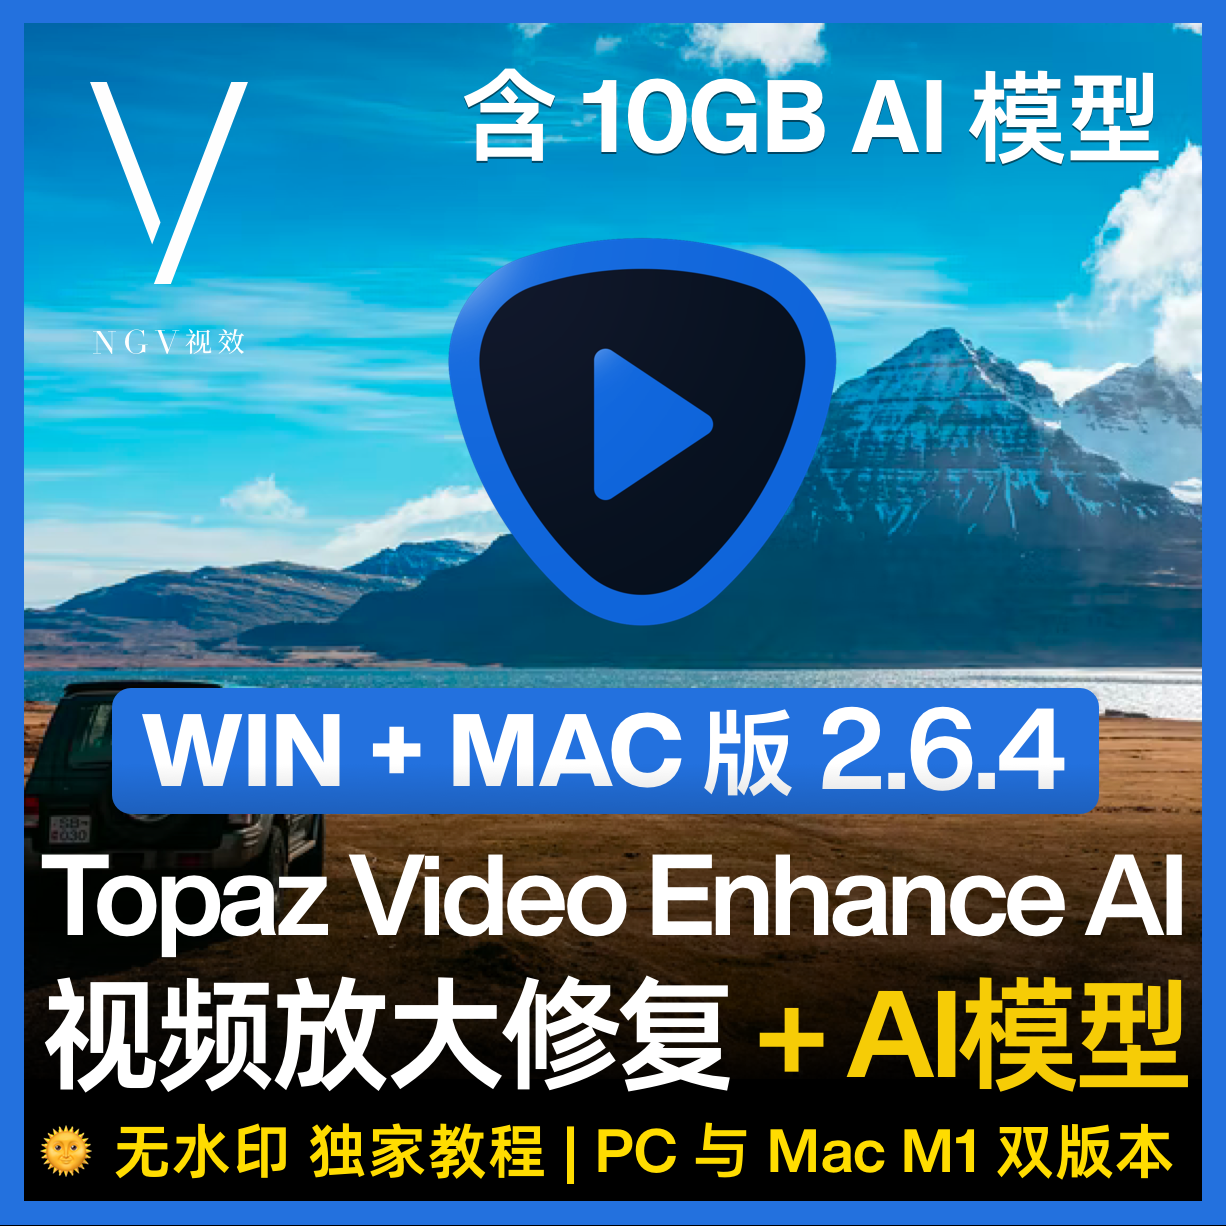 【视频放大修复】Topaz Video Enhance AI 2.6.4 PC MAC 视频无损放大修复4K